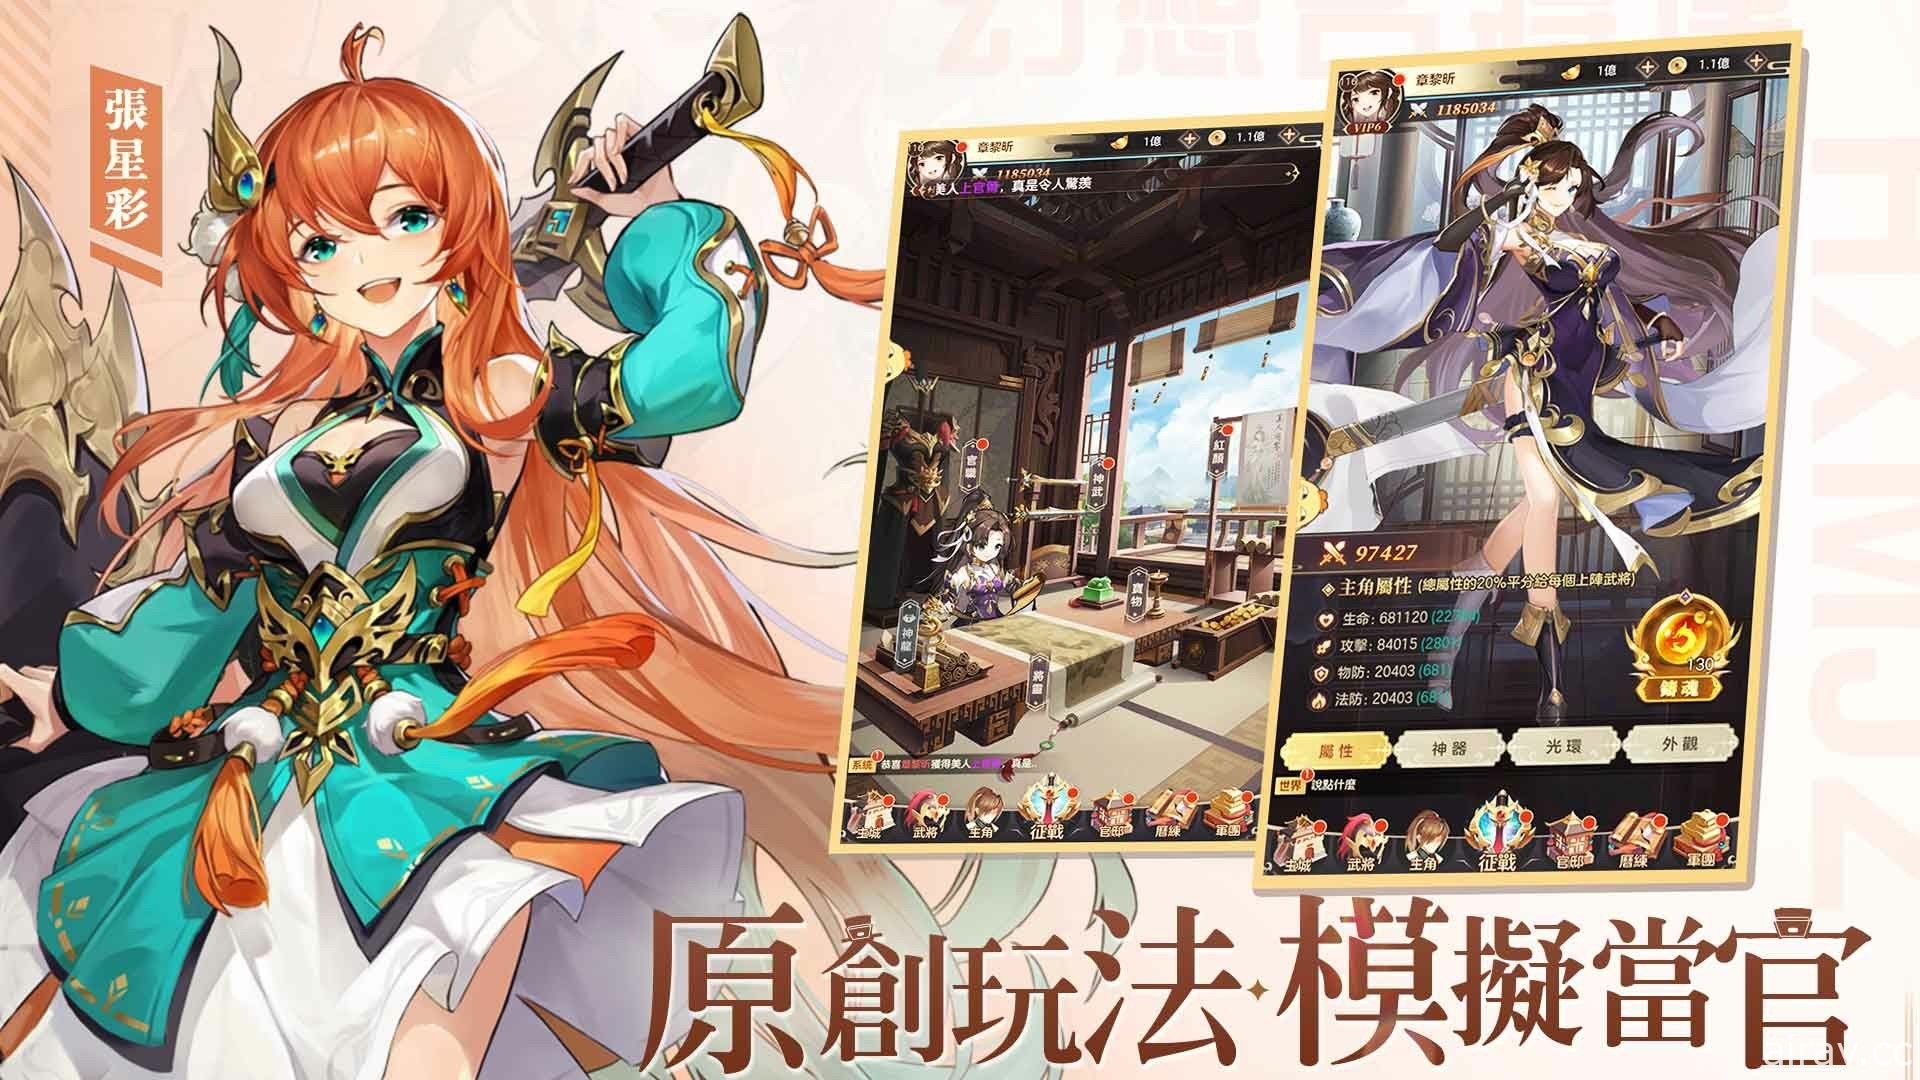 日式卡牌 RPG《幻想名将传》6 月 8 日上市预定 公开玩法介绍